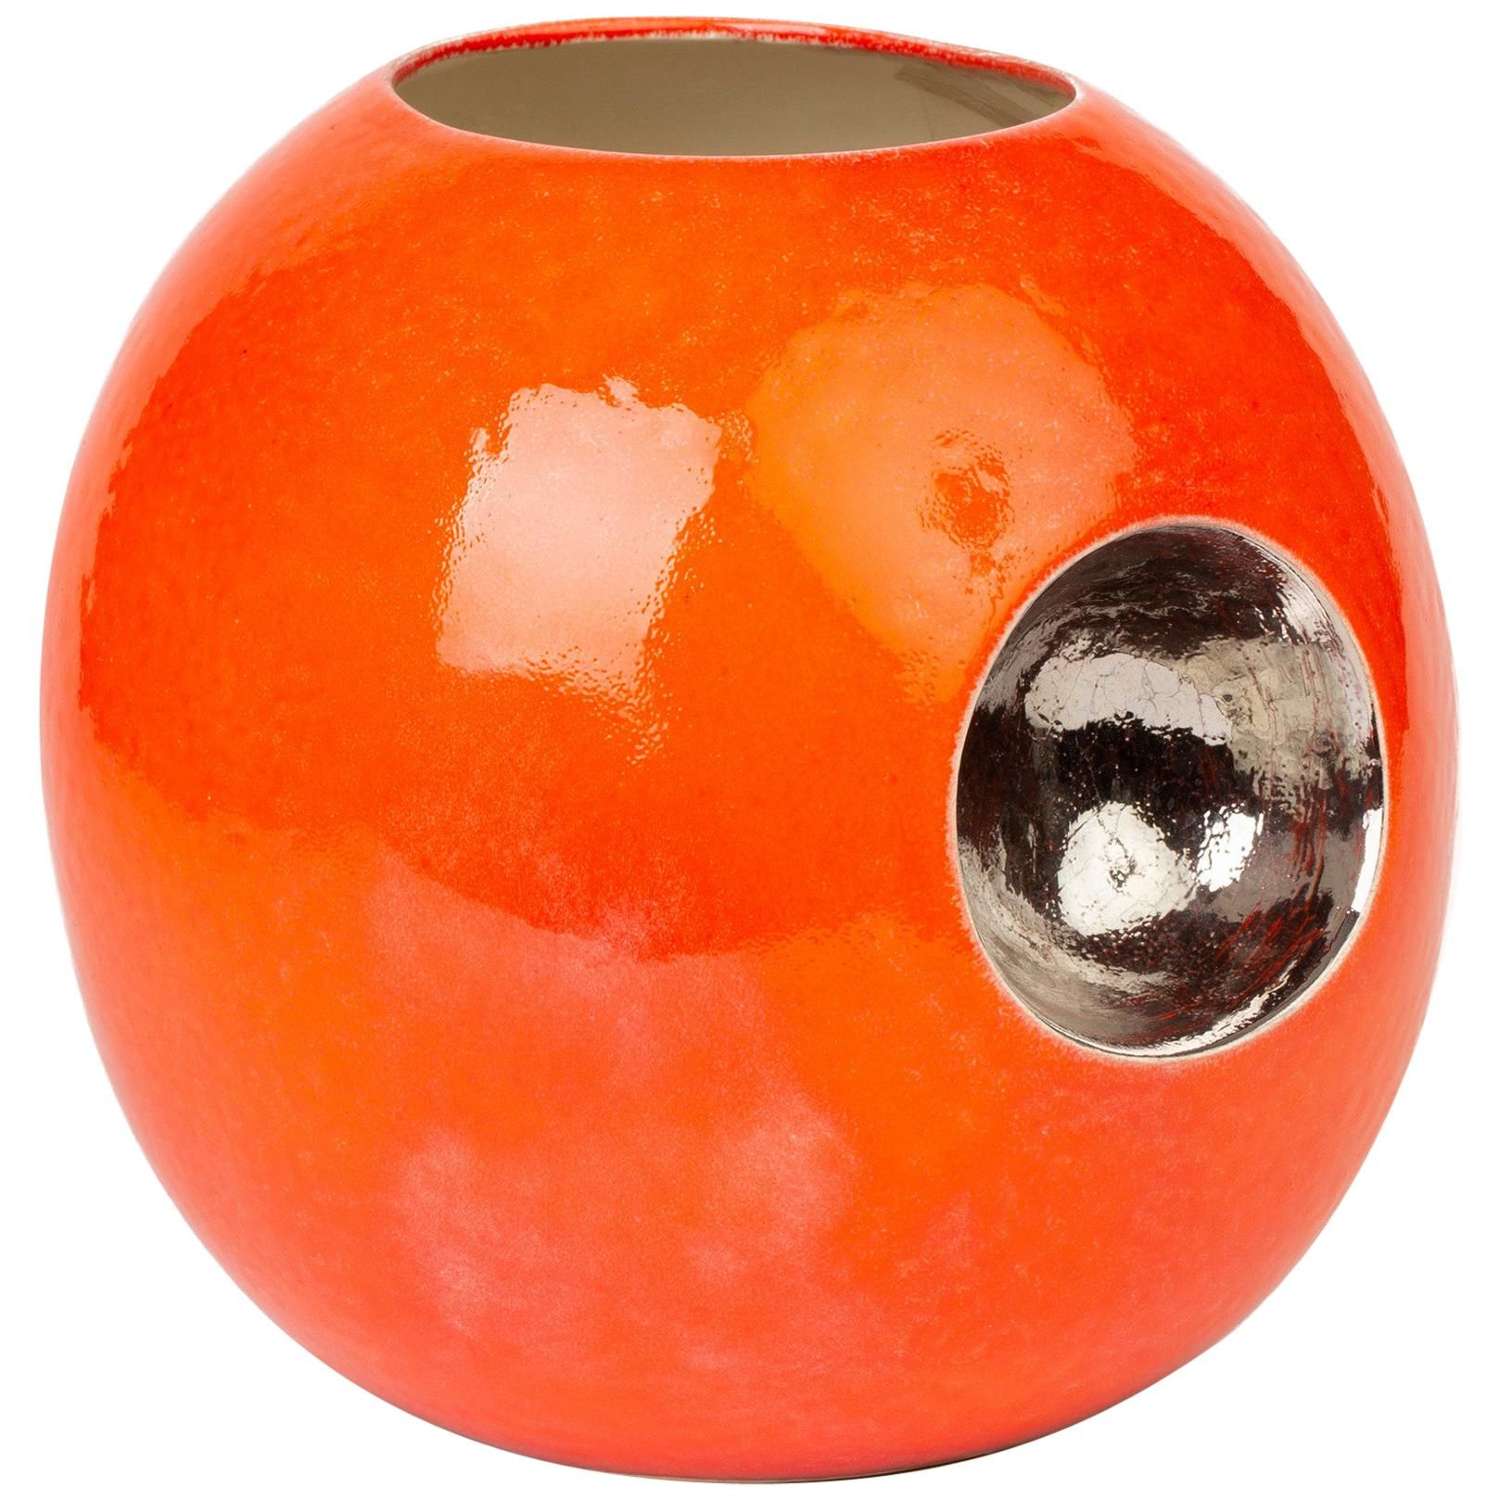 Stylish Contemporary Orange Glazed Globular Vase Signed Morgan Dated 2